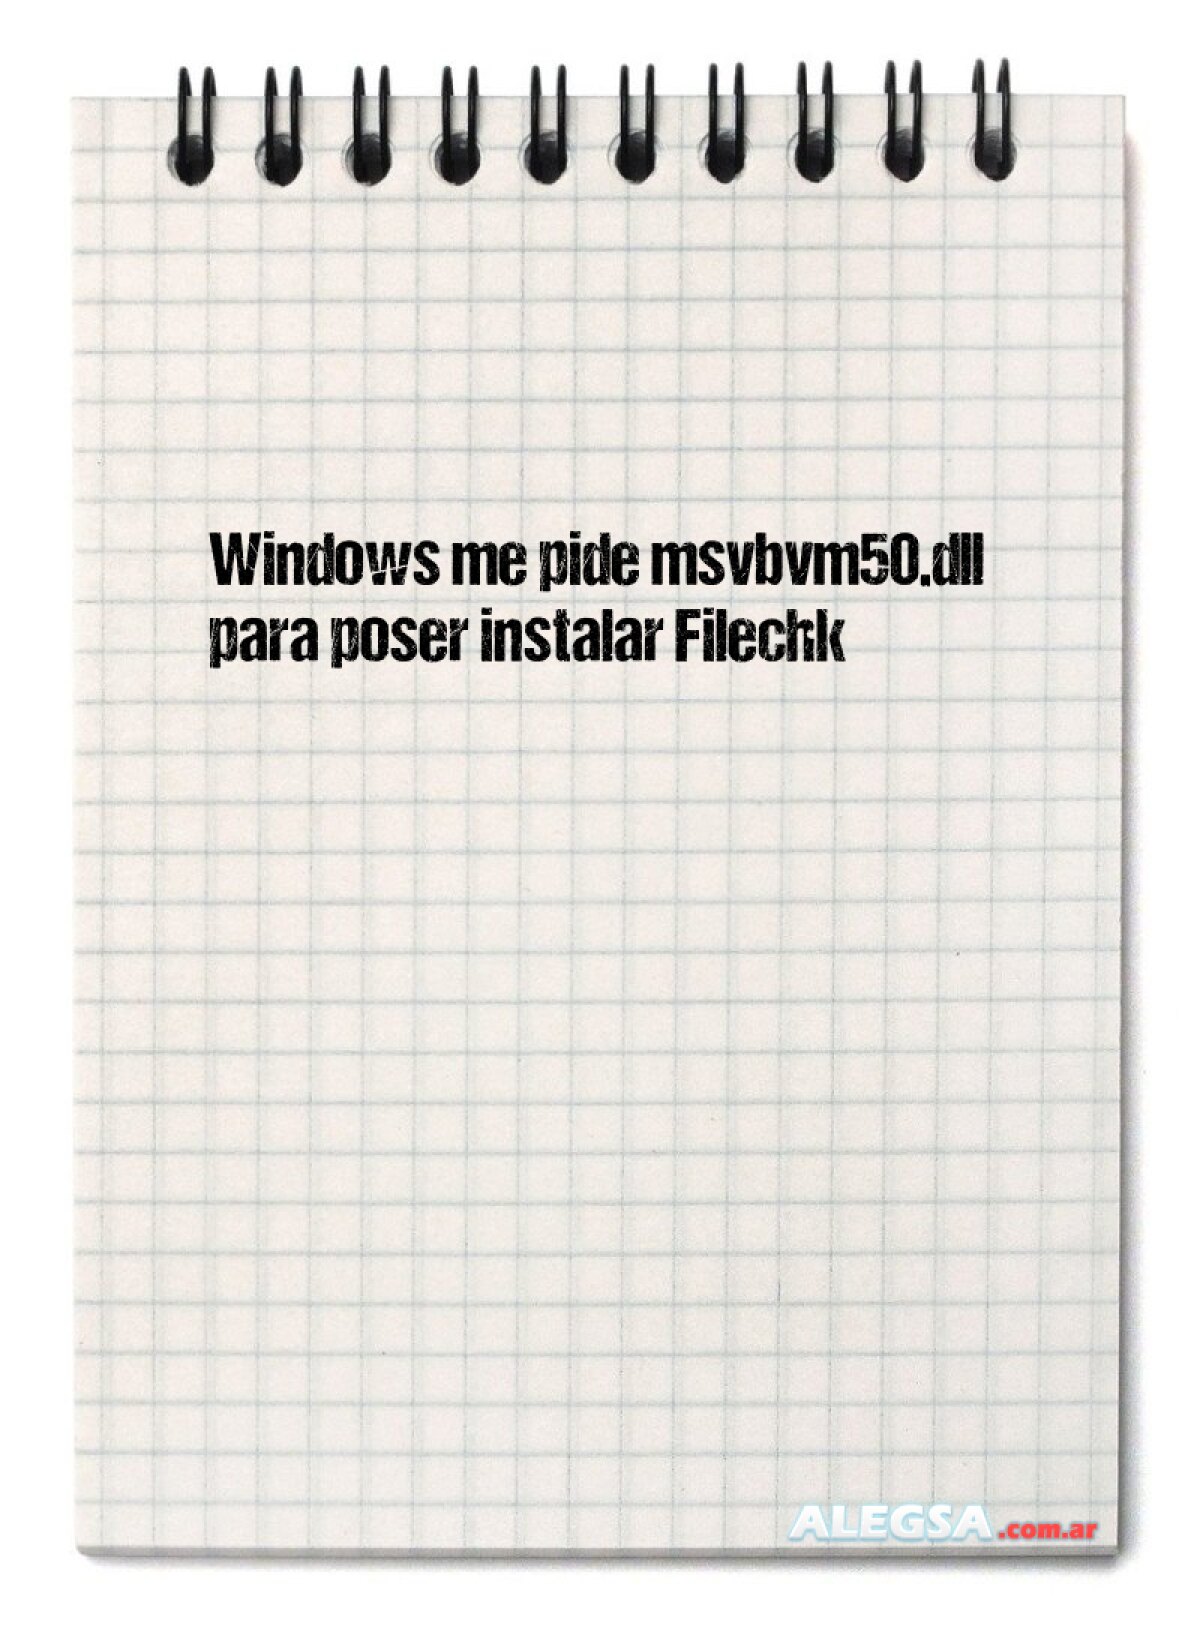 Windows me pide msvbvm50.dll para poser instalar Filechk